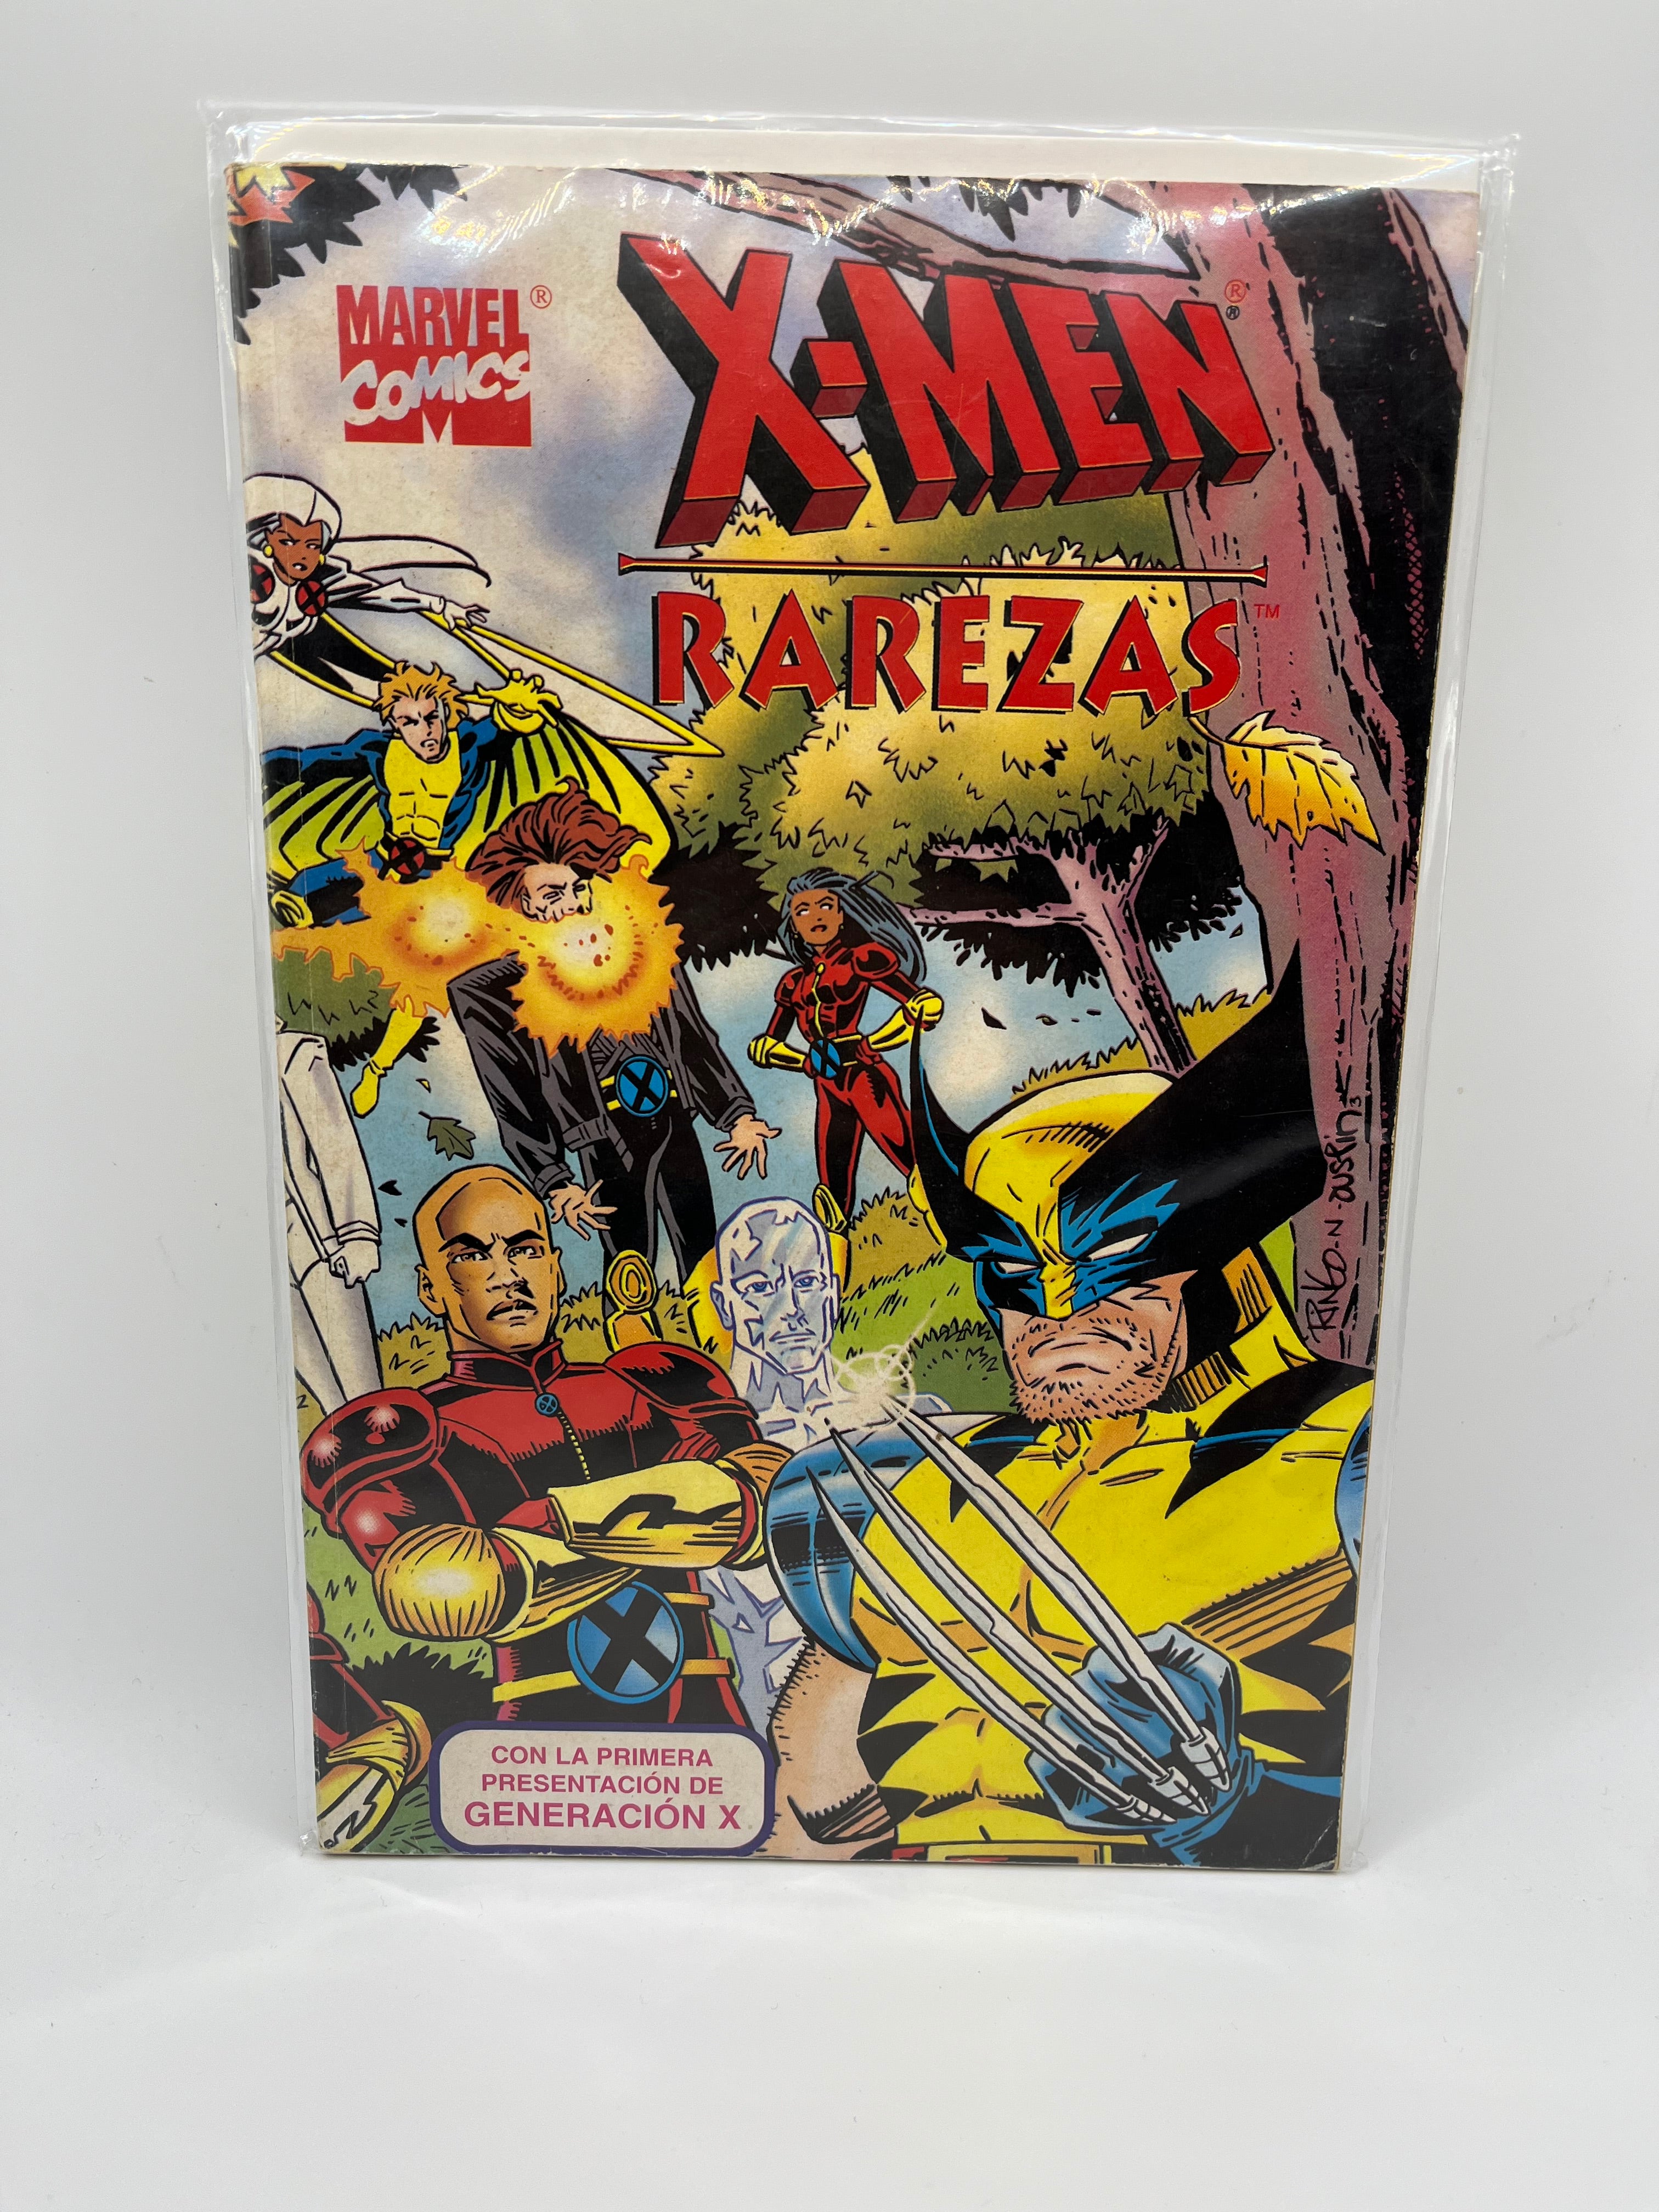 X-Men Rarezas Con La Primera Presentación De Generación X Marvel Comics Español